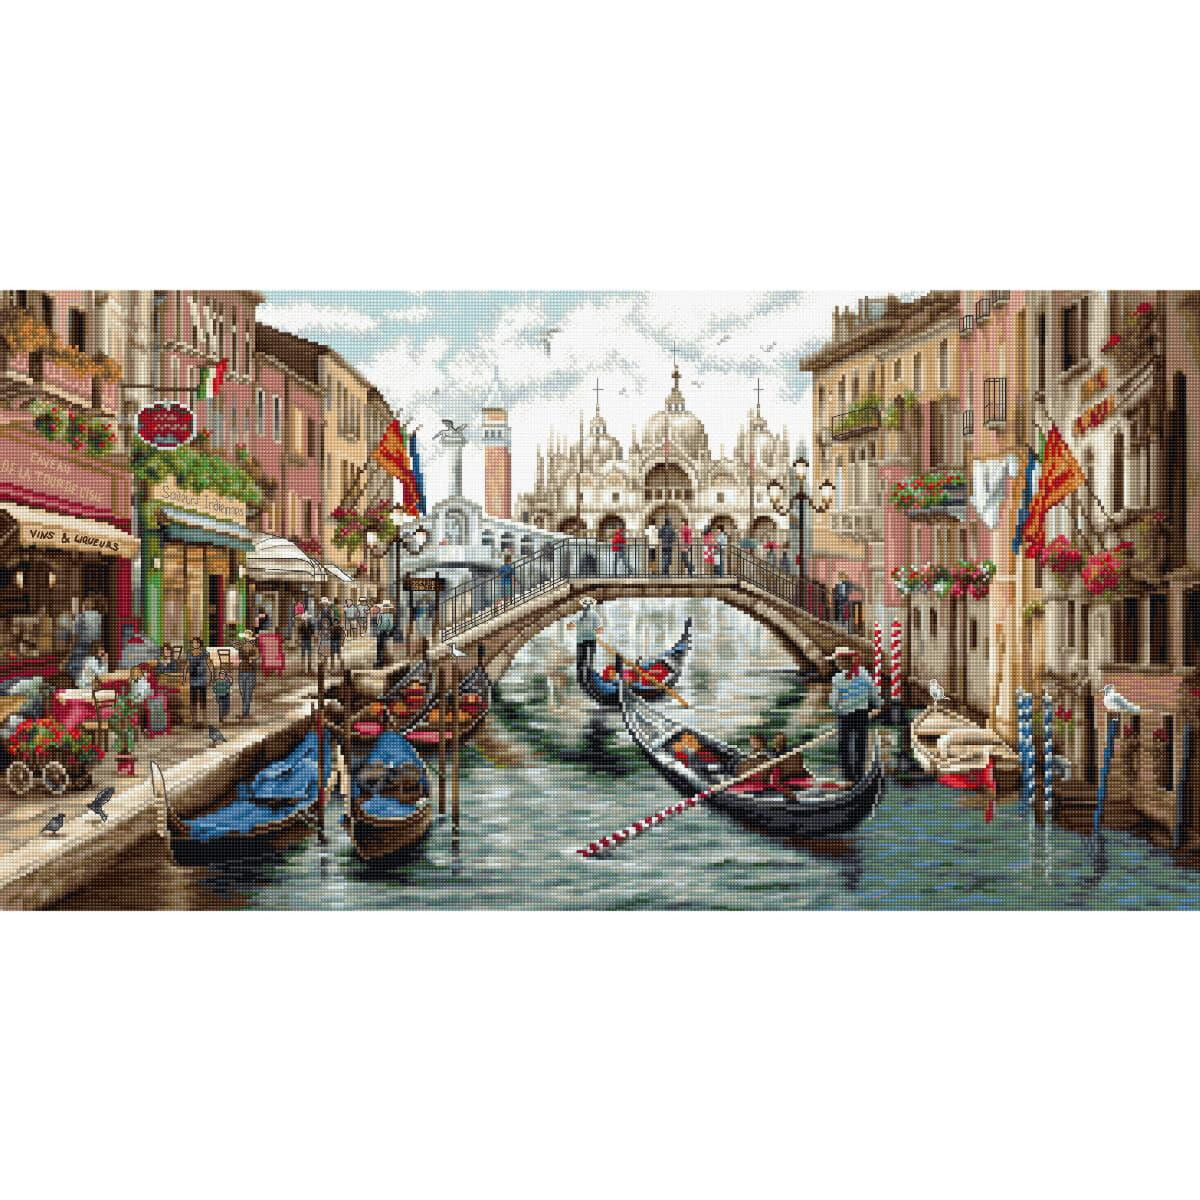 Оживленная сцена на канале в Венеции показывает гондолы,...